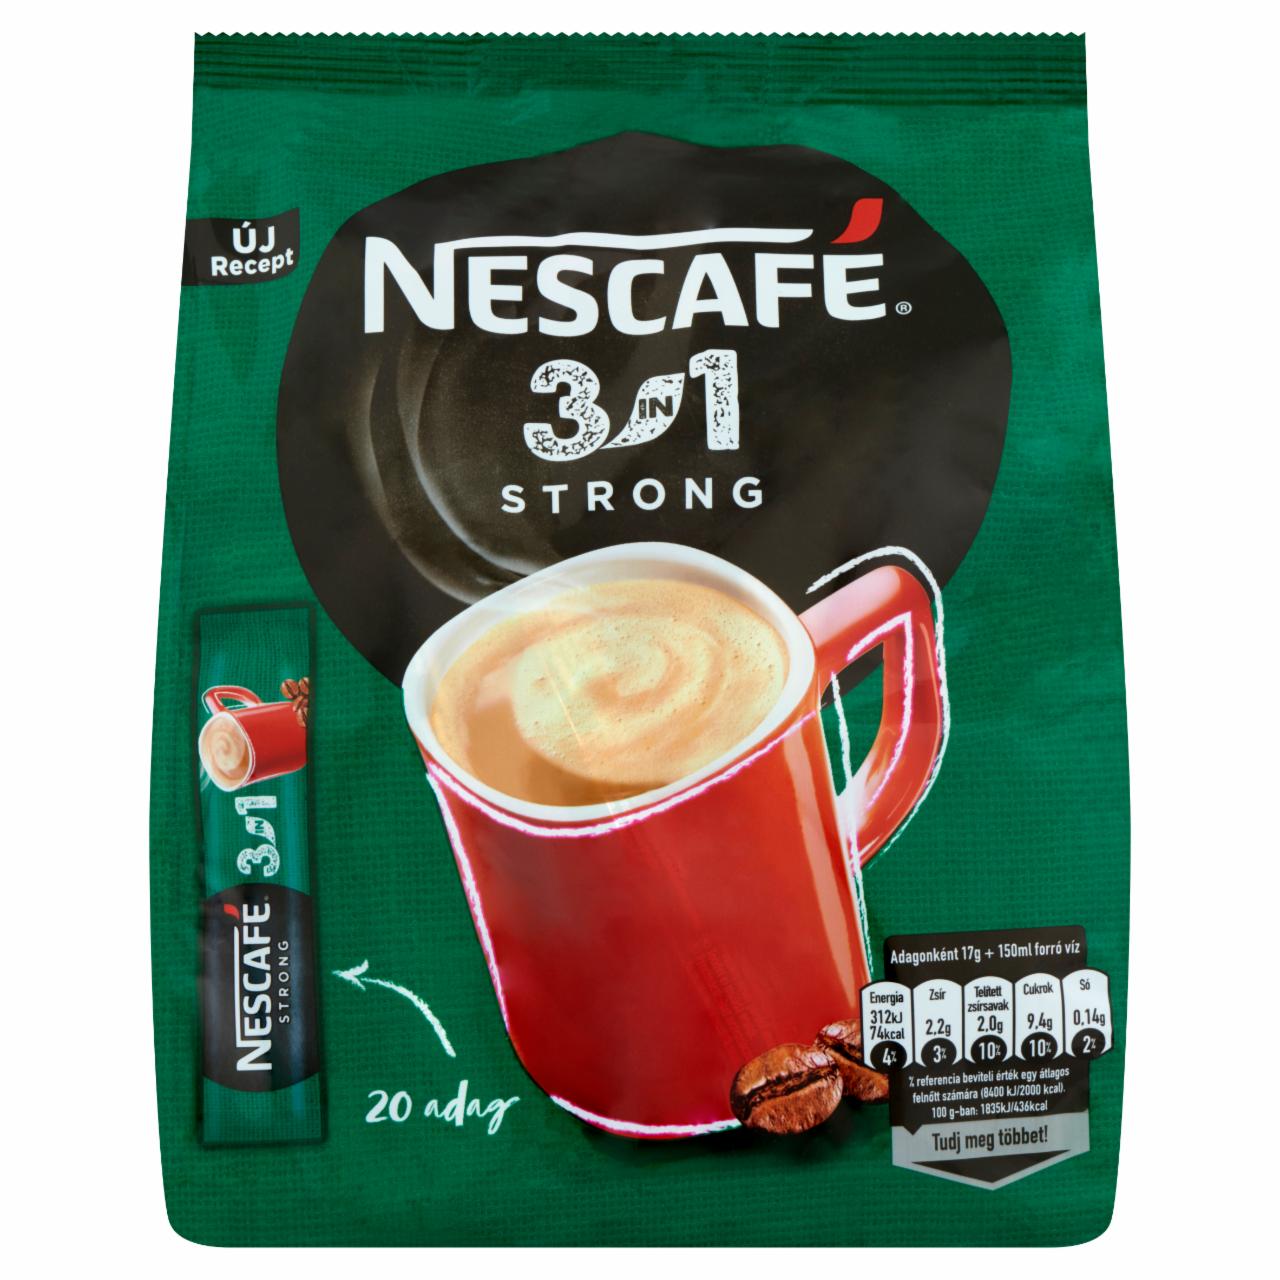 Képek - Nescafé 3in1 Strong azonnal oldódó kávéspecialitás 20 db 340 g